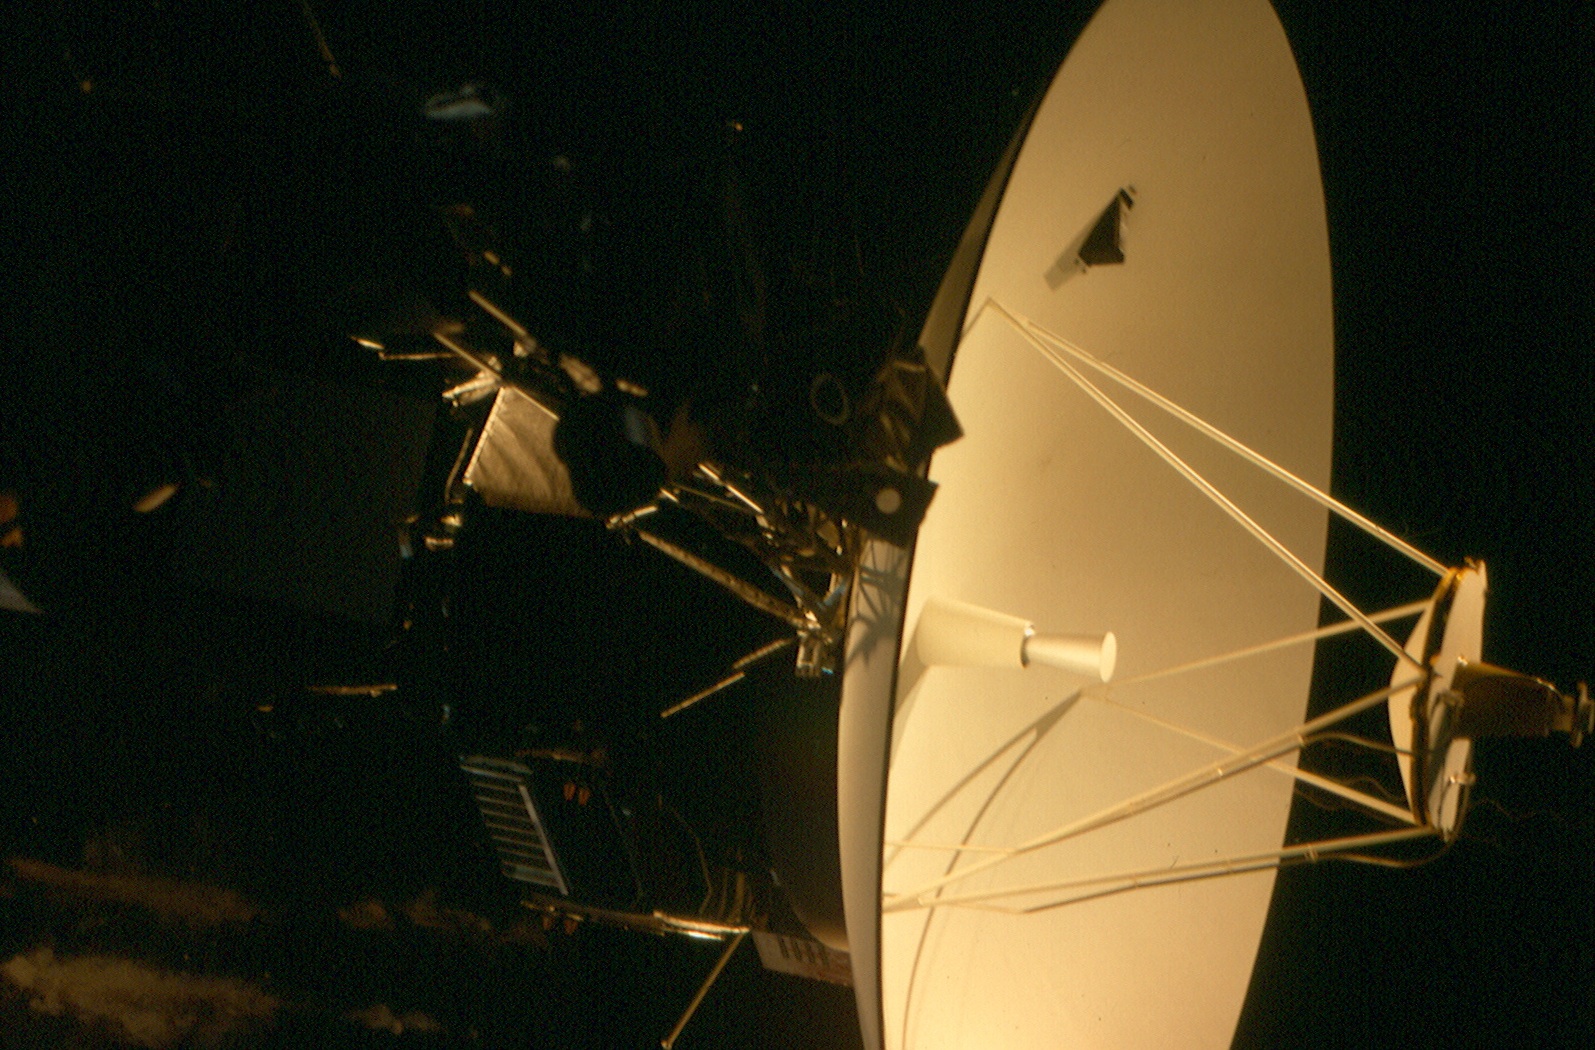 Voyager mockup at NASM